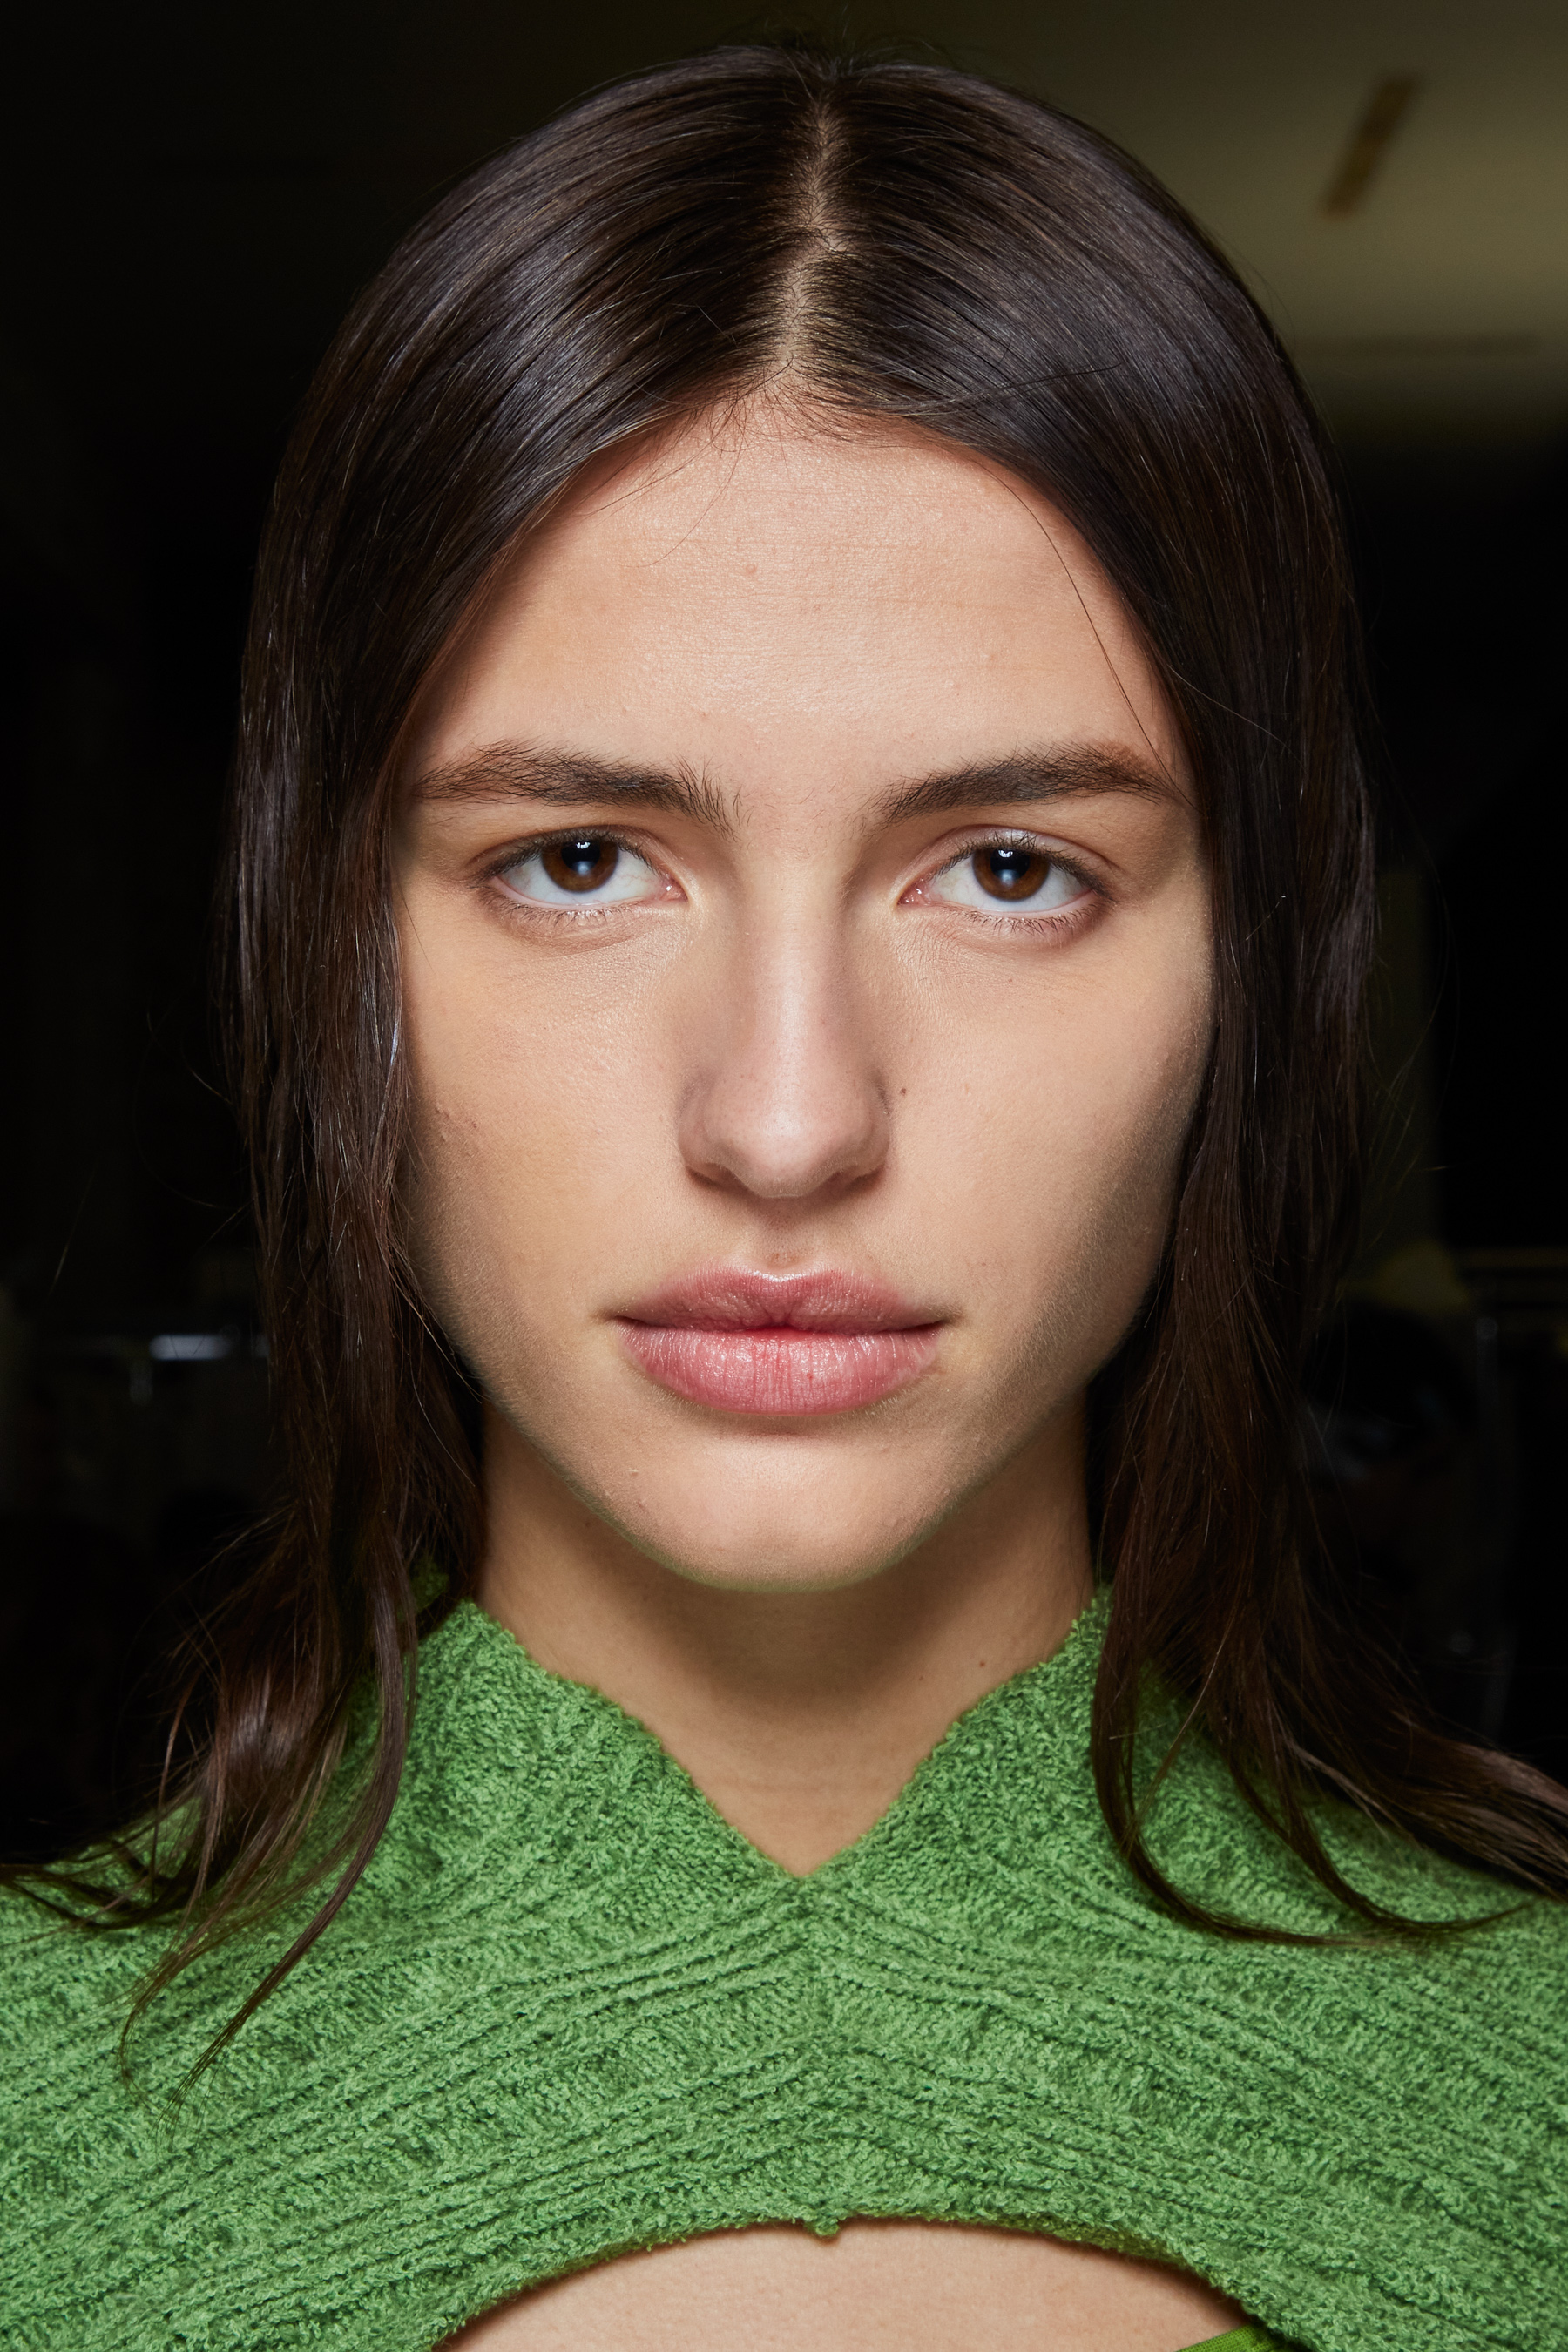 Louis Vuitton  rocio vila make up & cosmetology